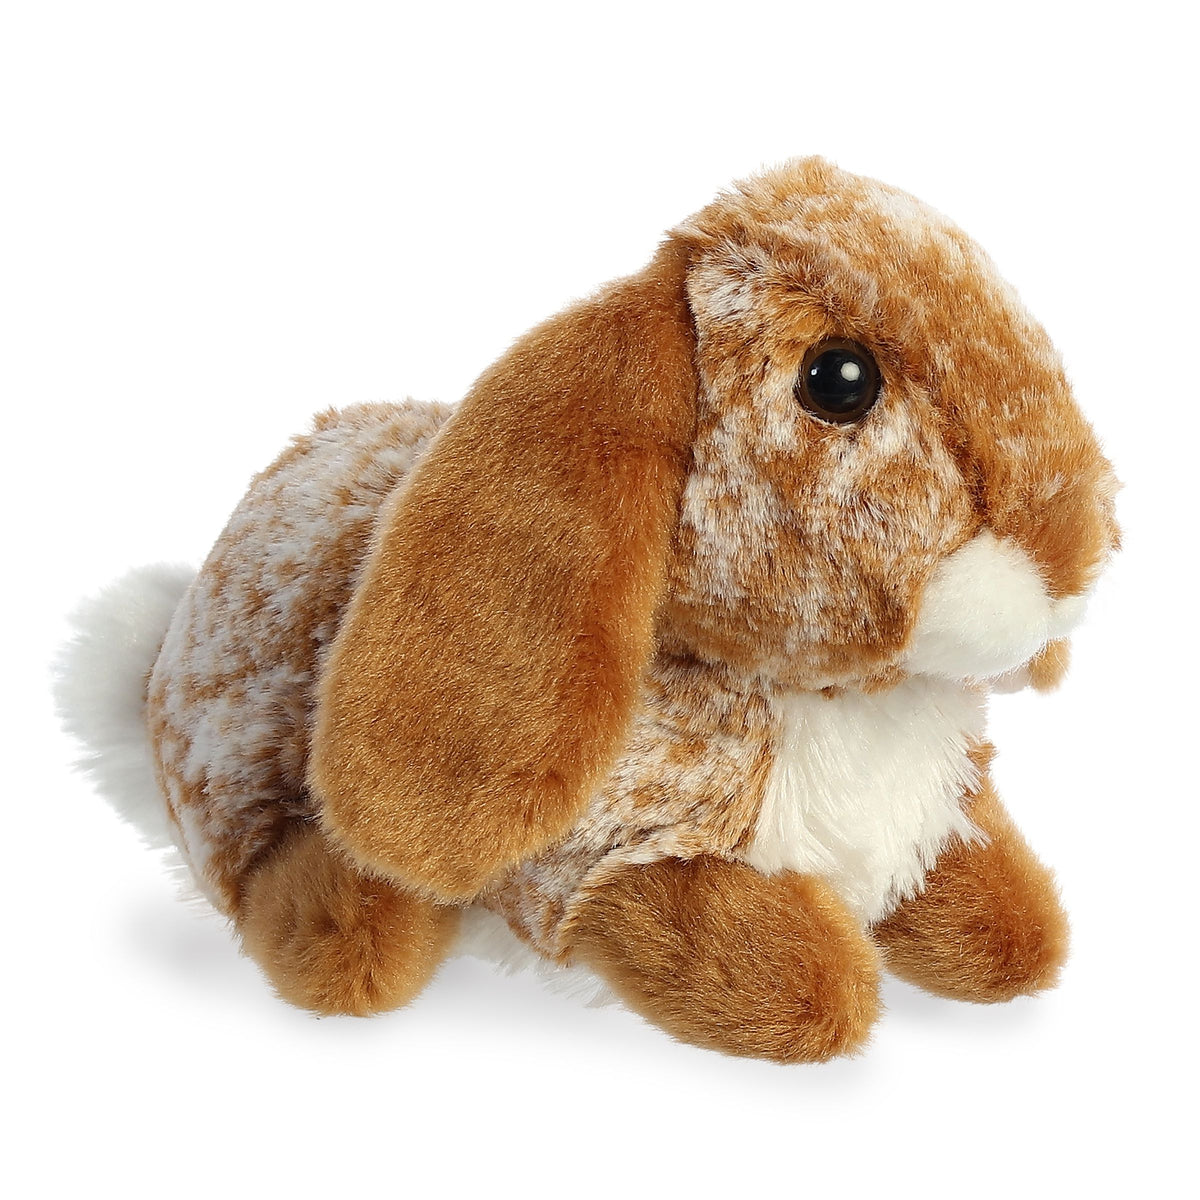 Mini Flopsie Lopso Bunny plush, brown and white fur, floppy ears, with expressive eyes!